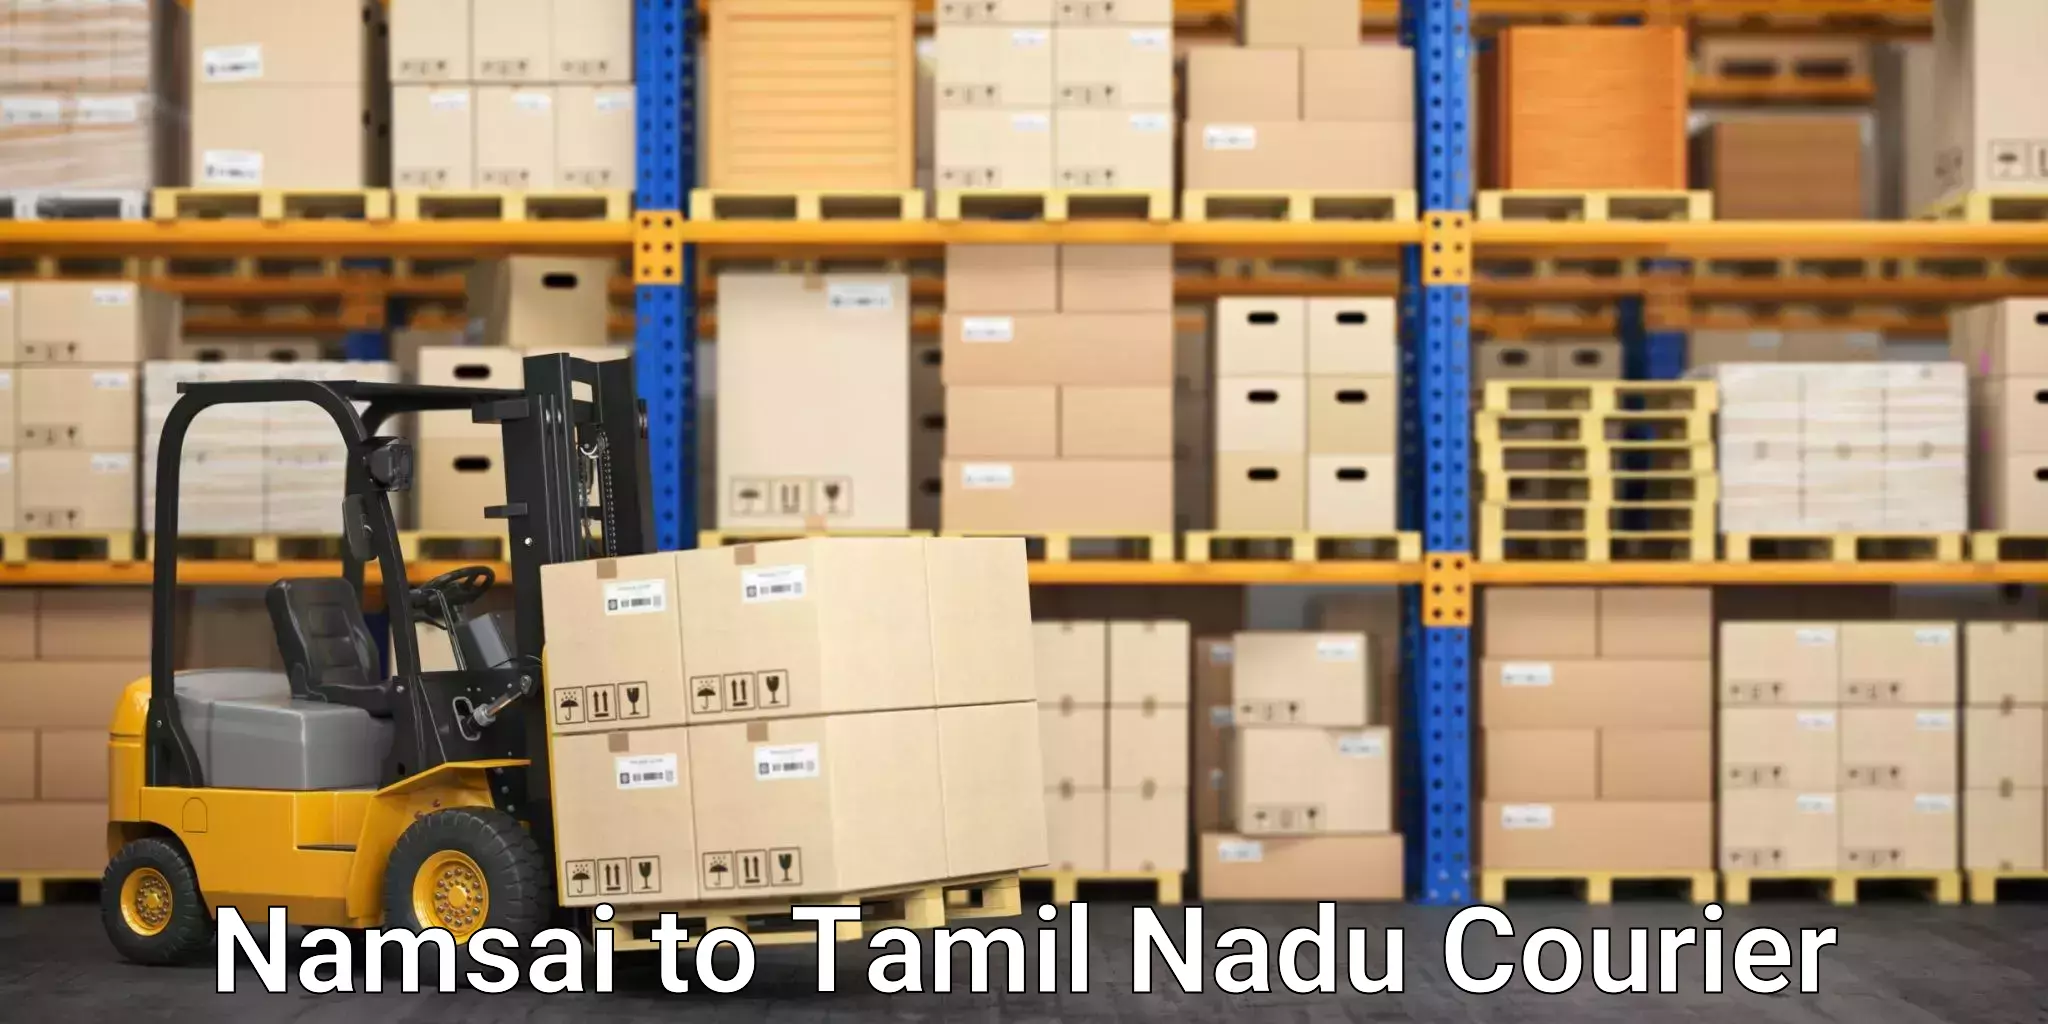 Express logistics providers Namsai to Perundurai